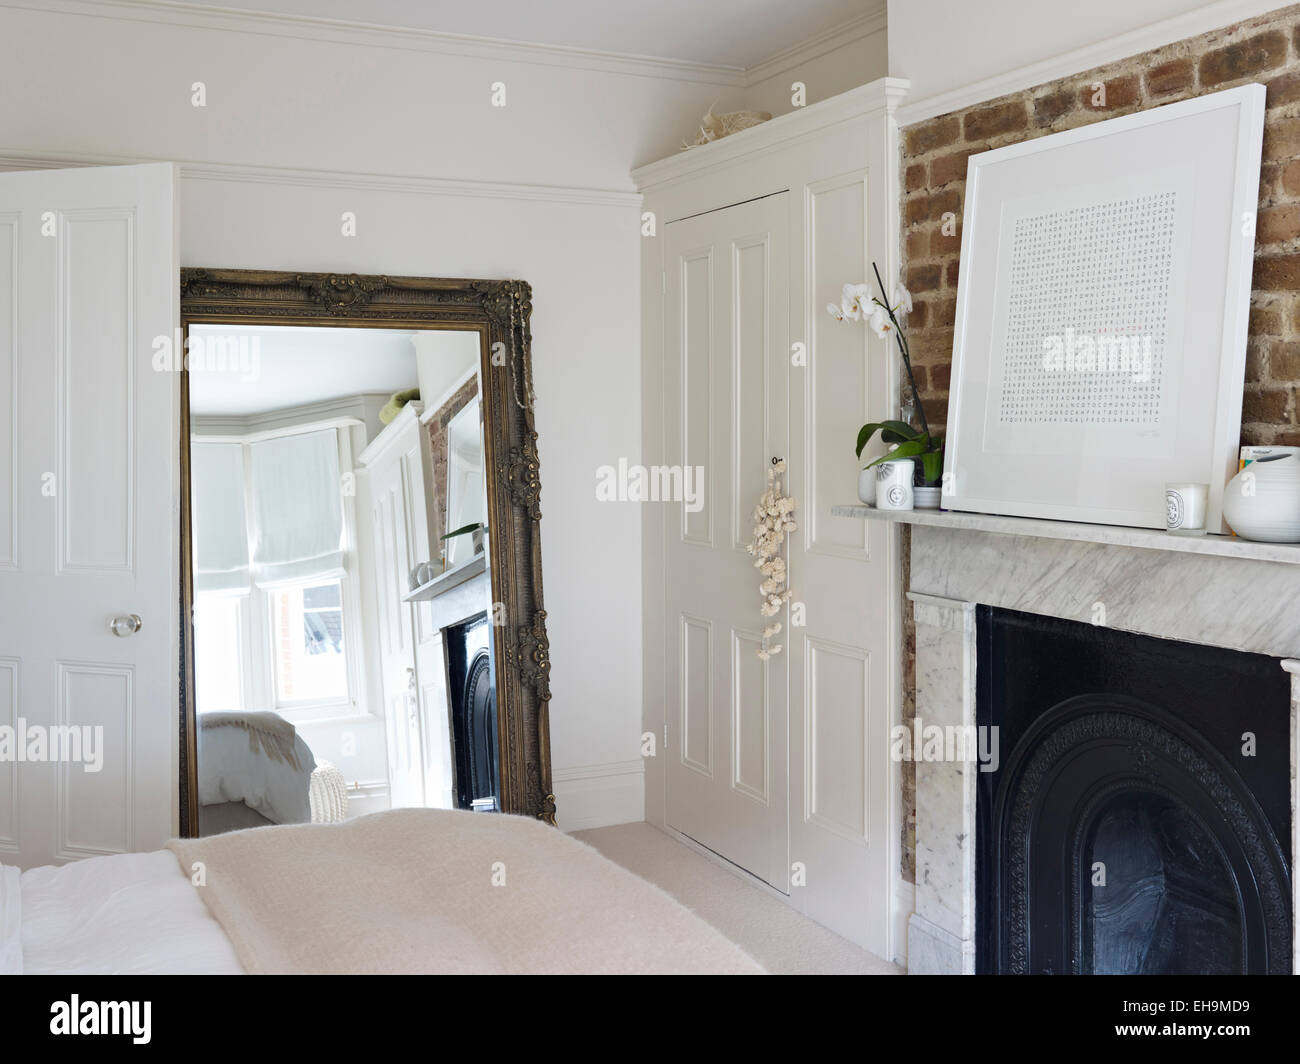 Chambre avec un grand miroir, placard lambris et cheminée en marbre noir avec firegrate, maison d'habitation, Port Hall Street, Brighton, East Sussex, UK Banque D'Images